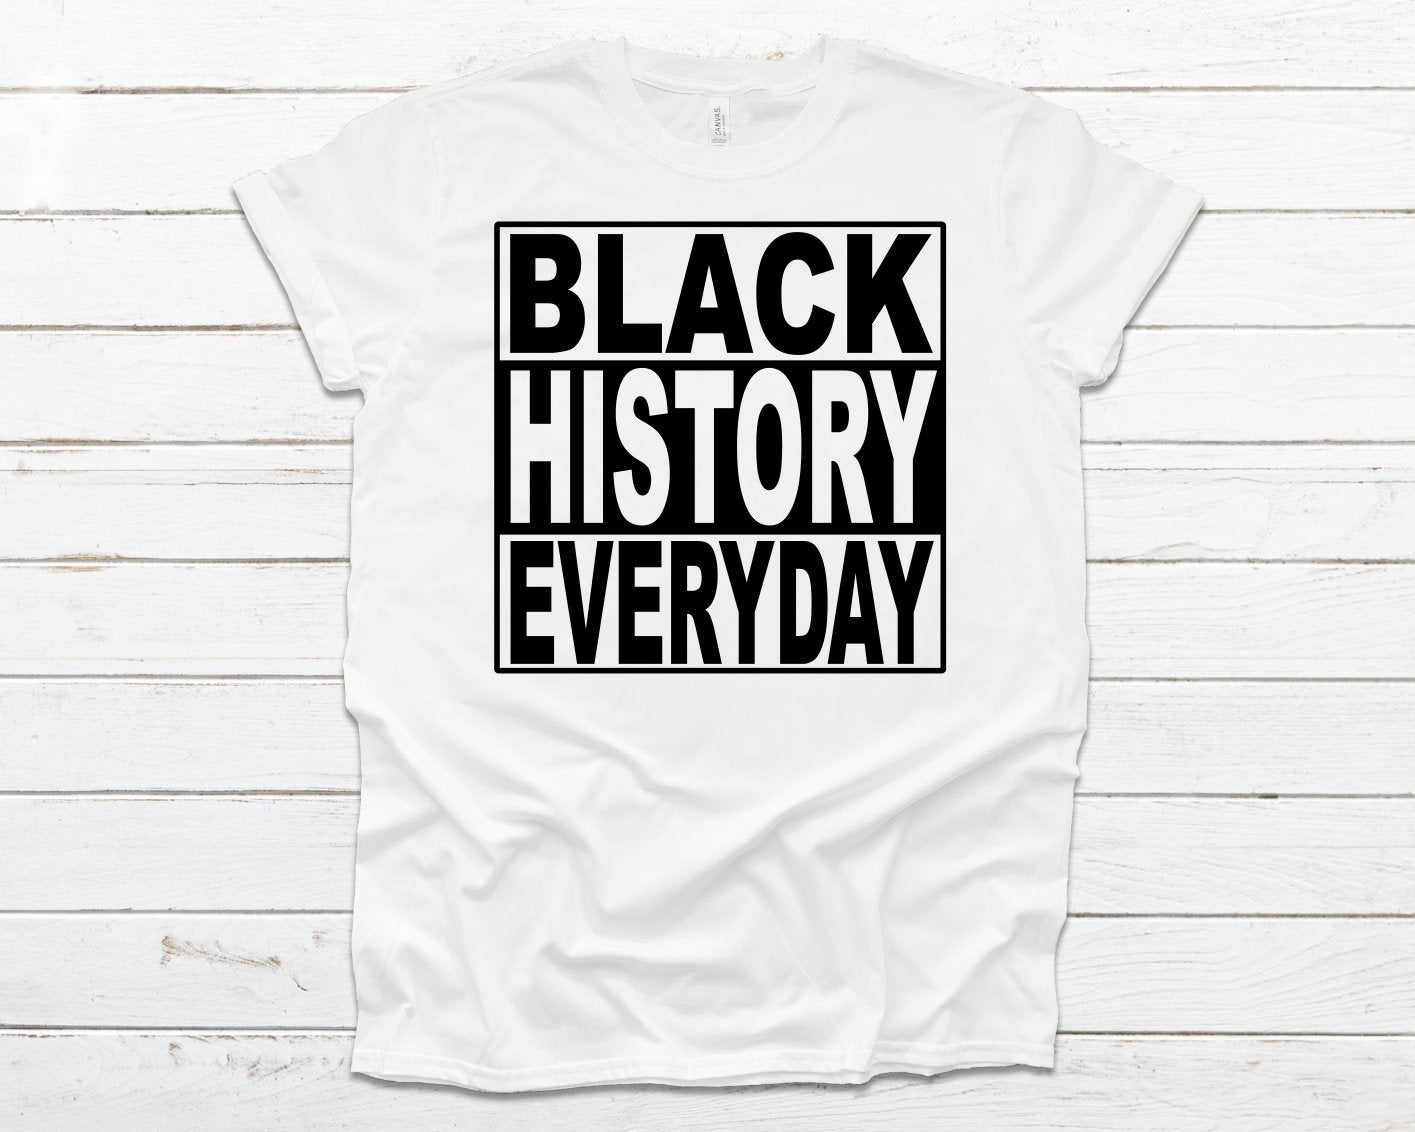 Black history, I am Black History